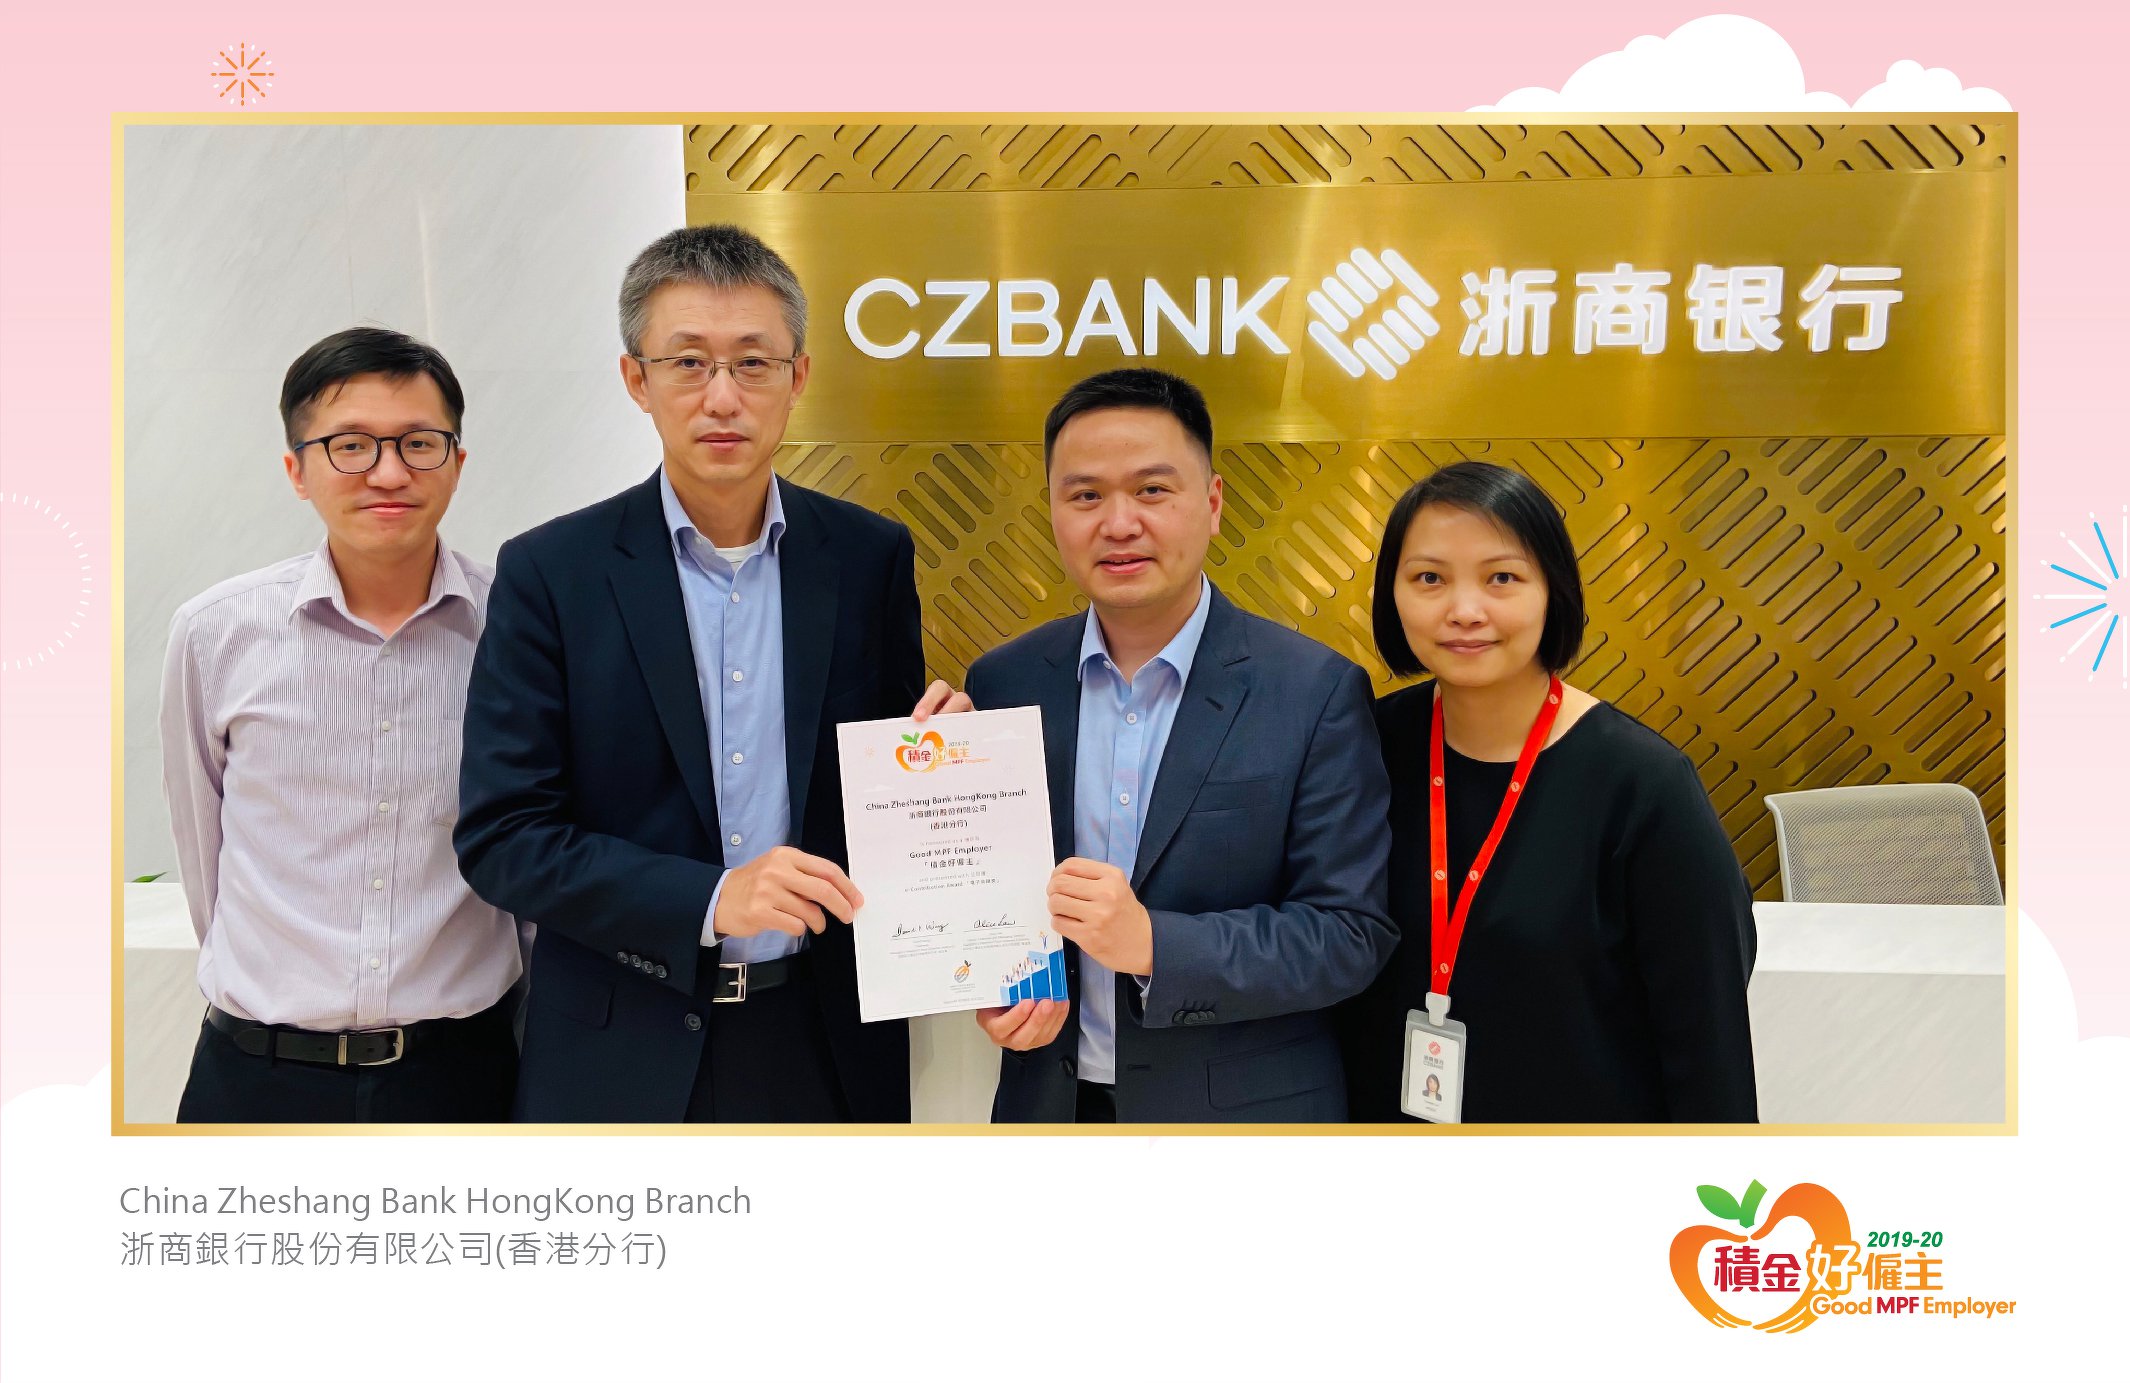 China Zheshang Bank HongKong Branch 浙商銀行股份有限公司(香港分行)